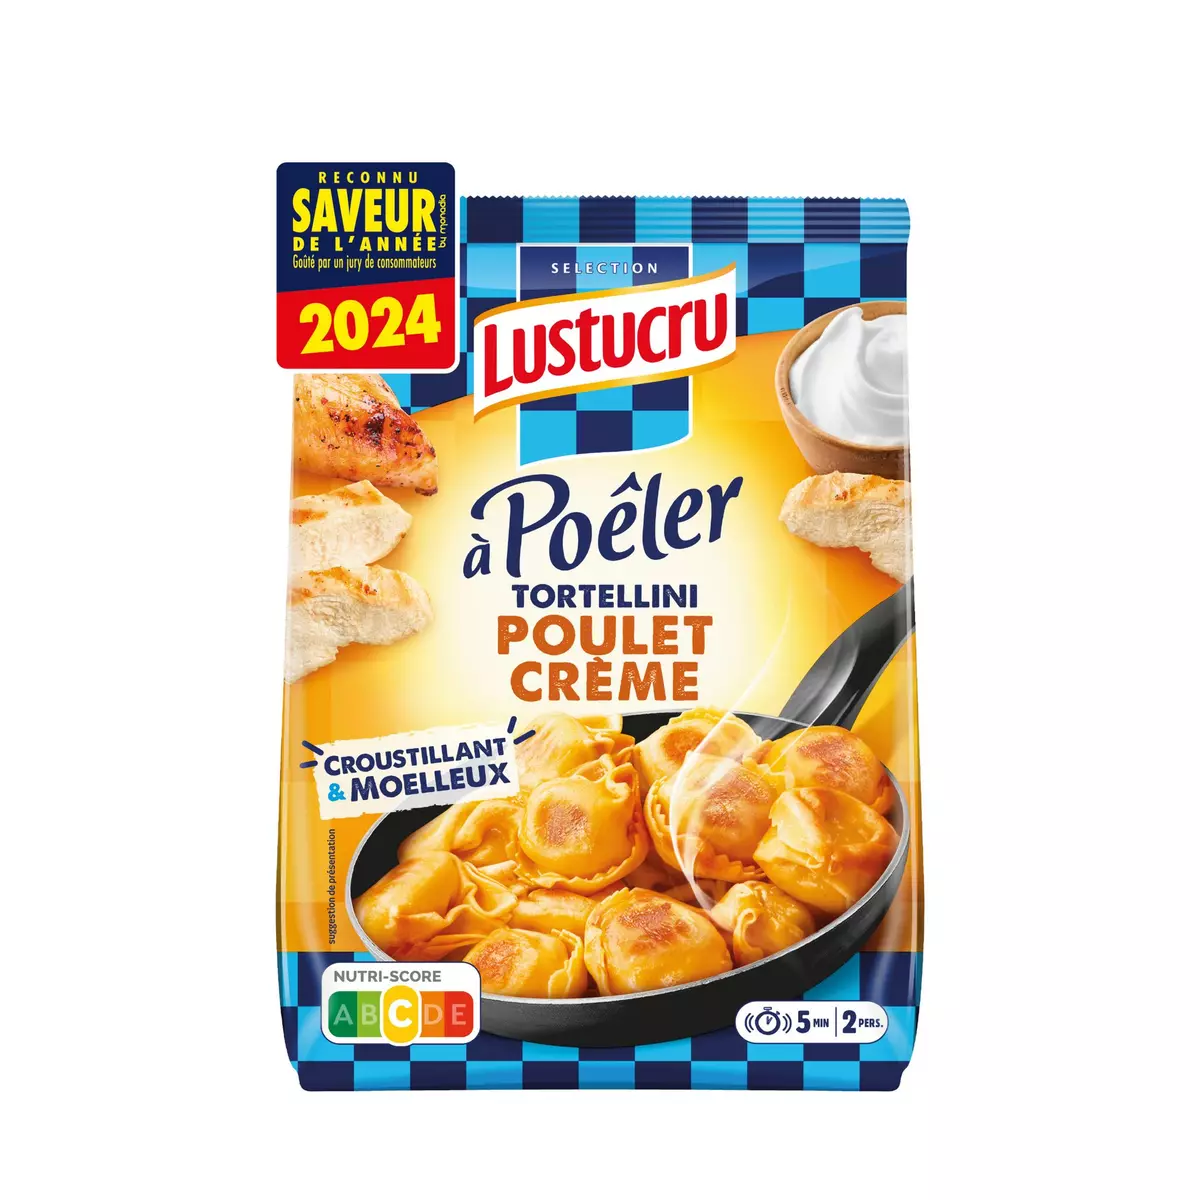 LUSTUCRU Tortellini poulet crème 2-3 portions 300g